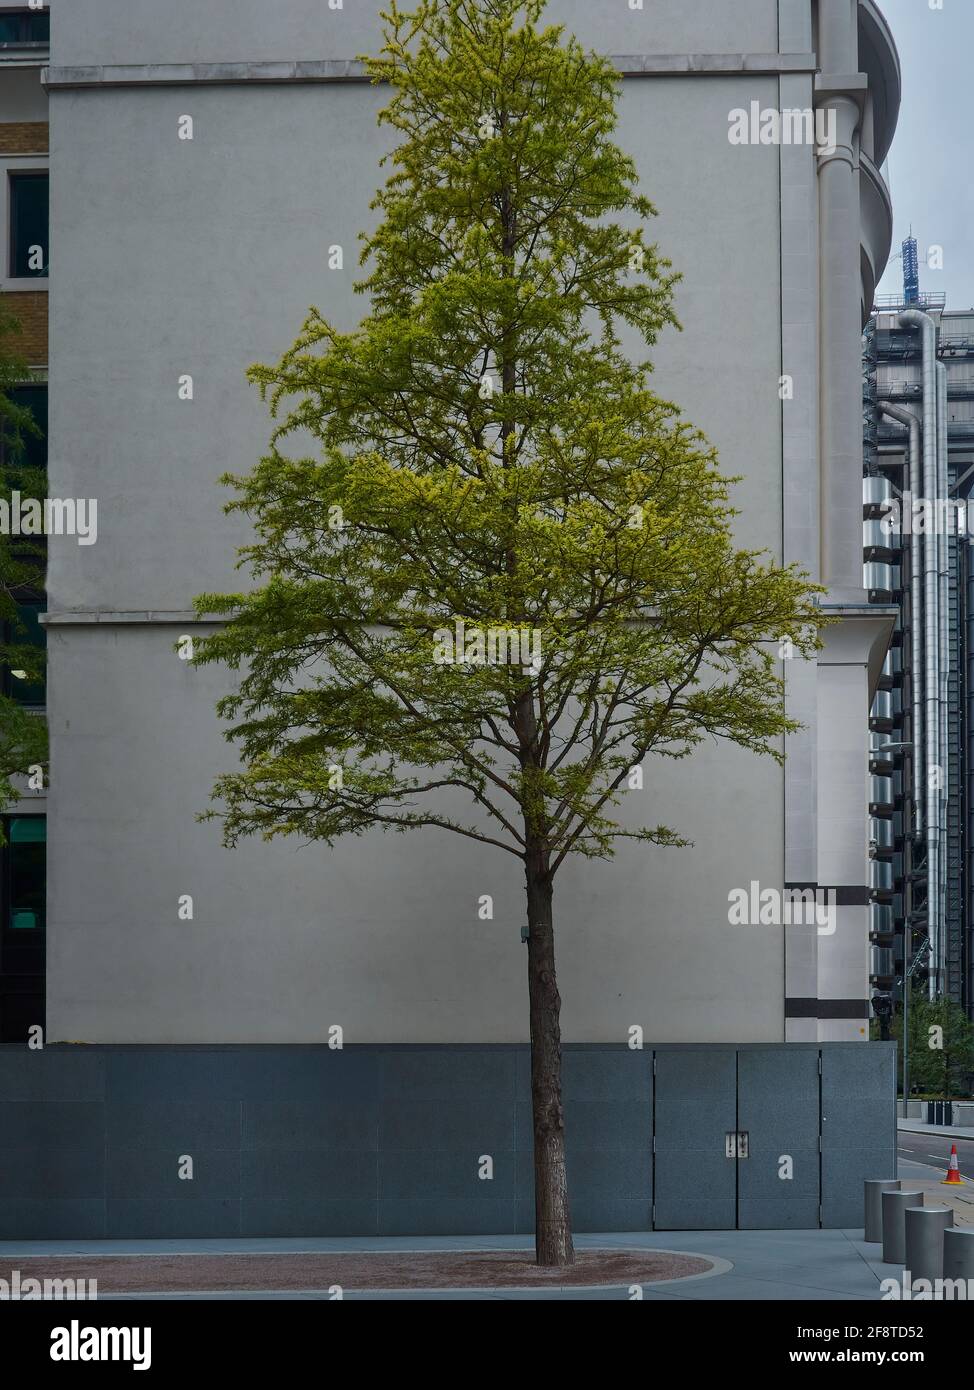 Natura trovare una casa in un ambiente urbano. Un albero in pieno fogliame, che aggiunge colore alla vita, in contrasto con il cemento grigio e l'acciaio. Foto Stock